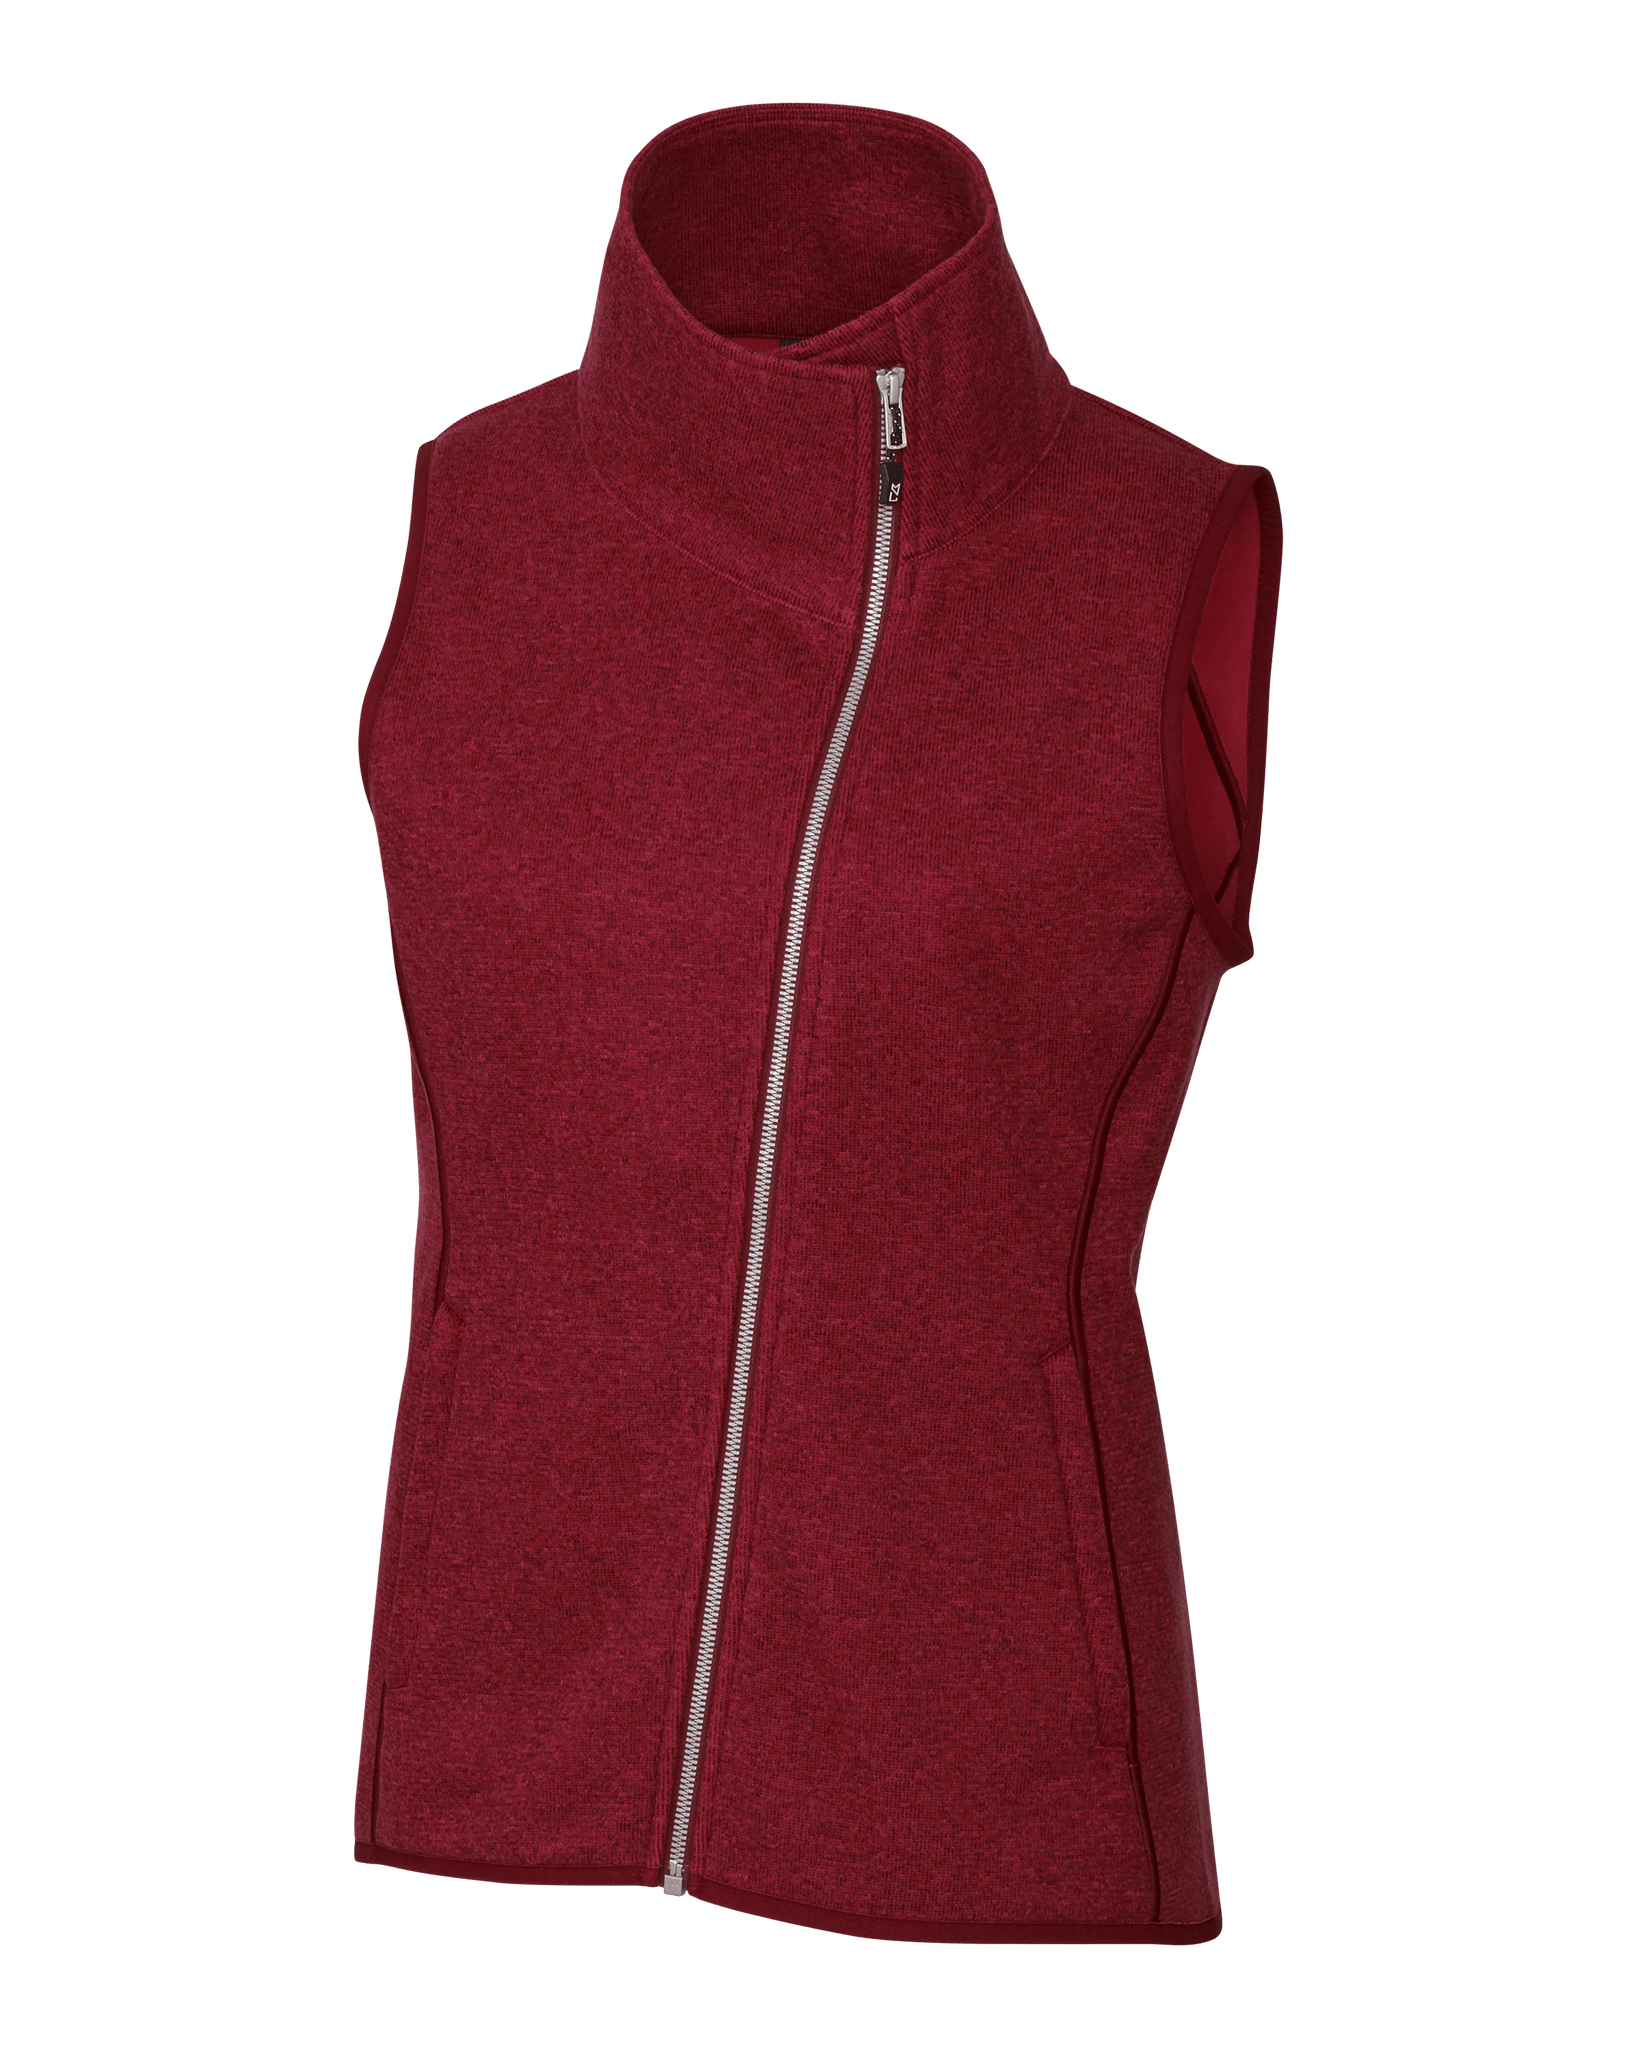 Cutter & Buck Fleece S / Cardinal Red Heather Cutter & Buck - Women's Mainsail Vest